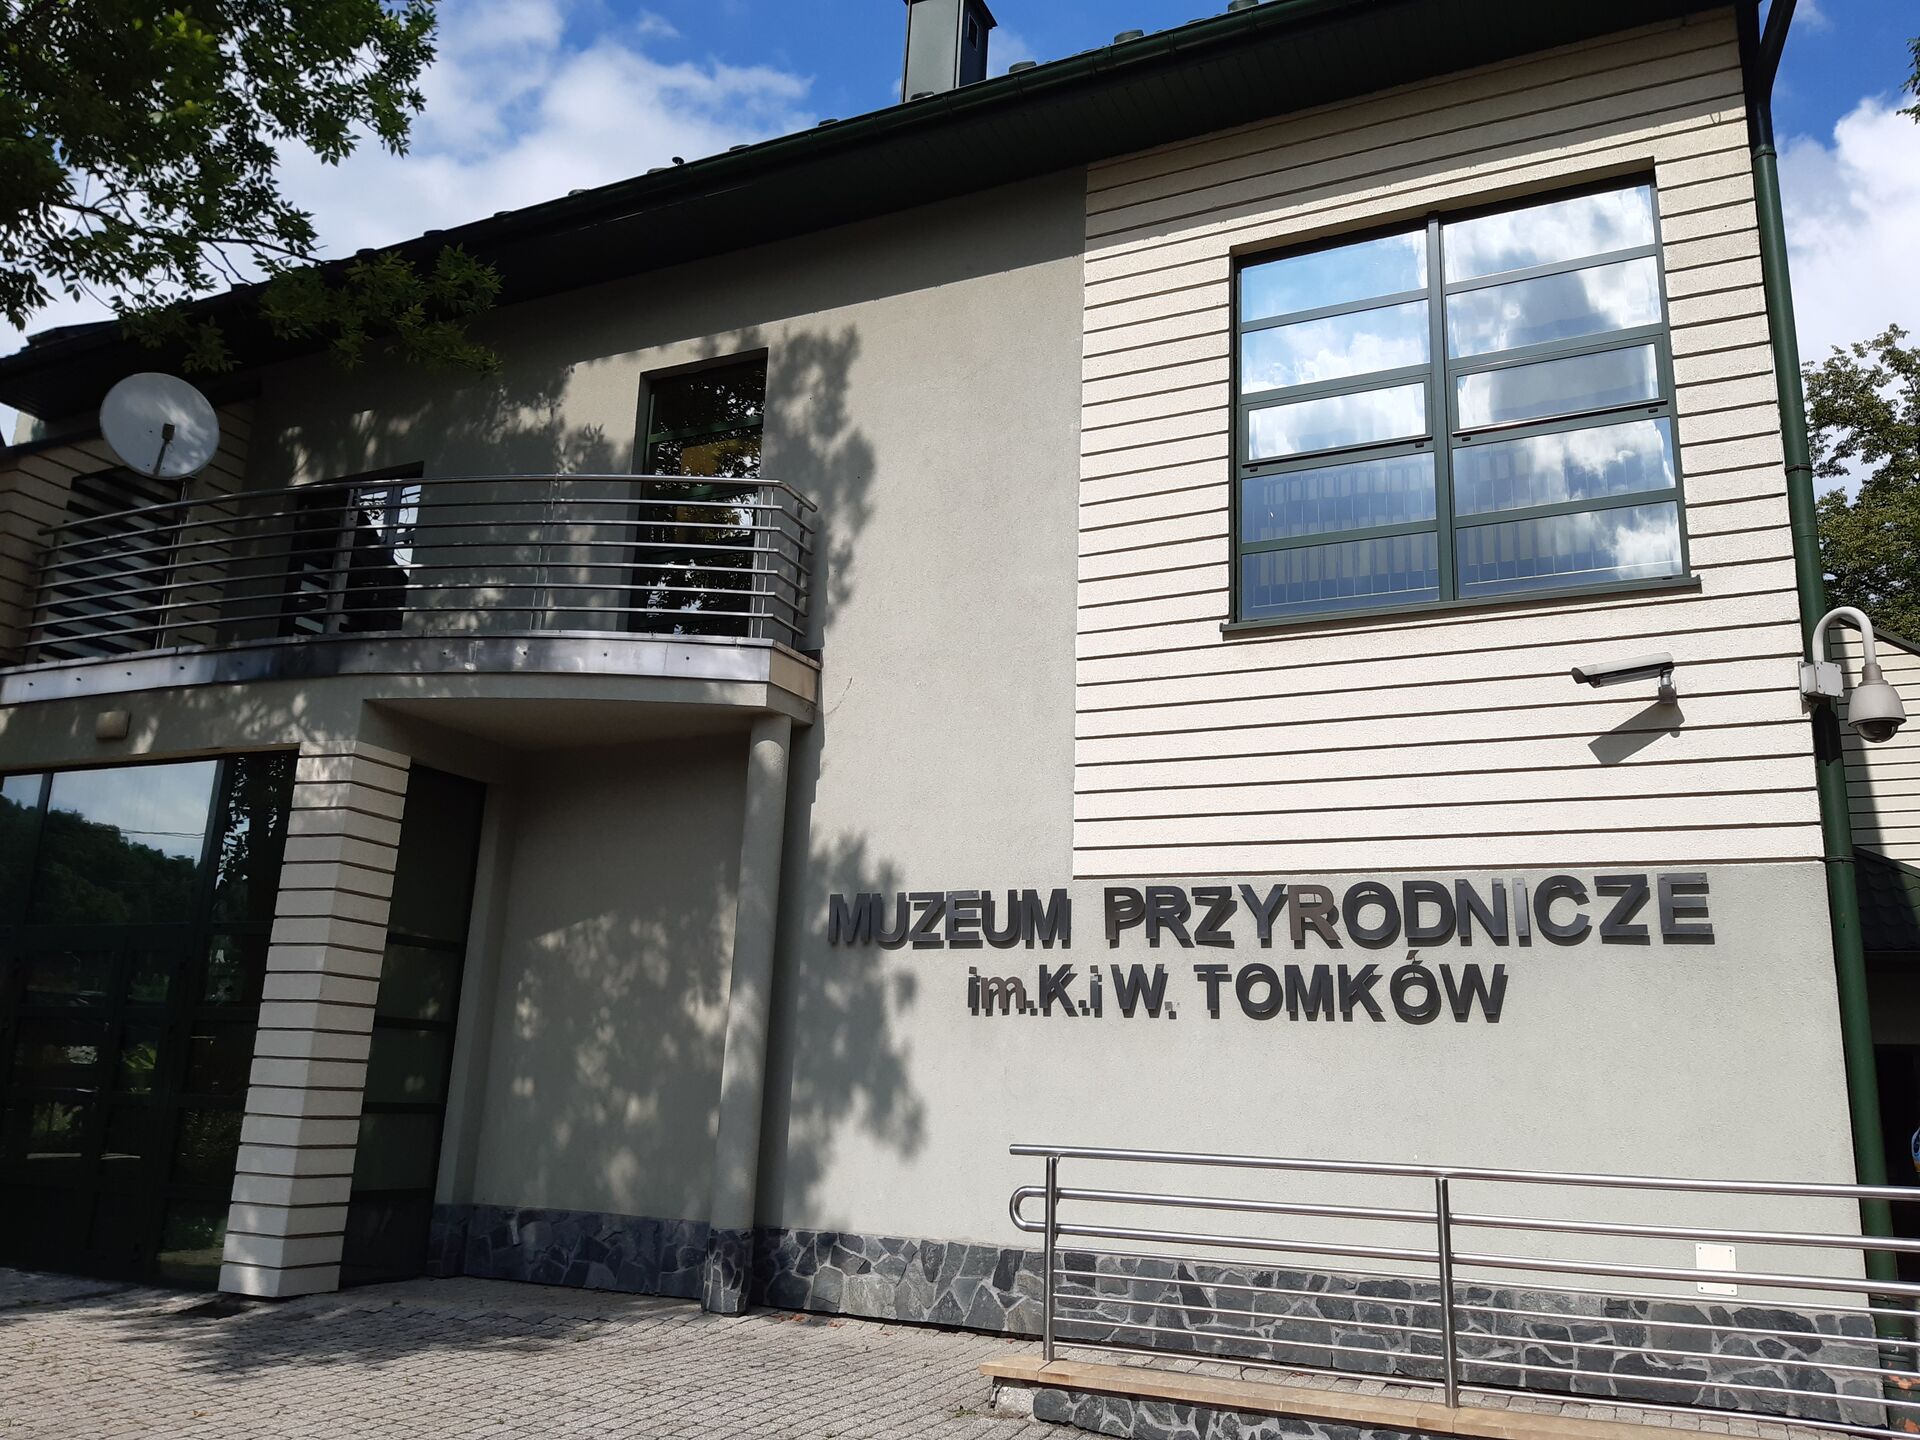 Muzeum Przyrodnicze im. K. i W. Tomków w Ciężkowicach